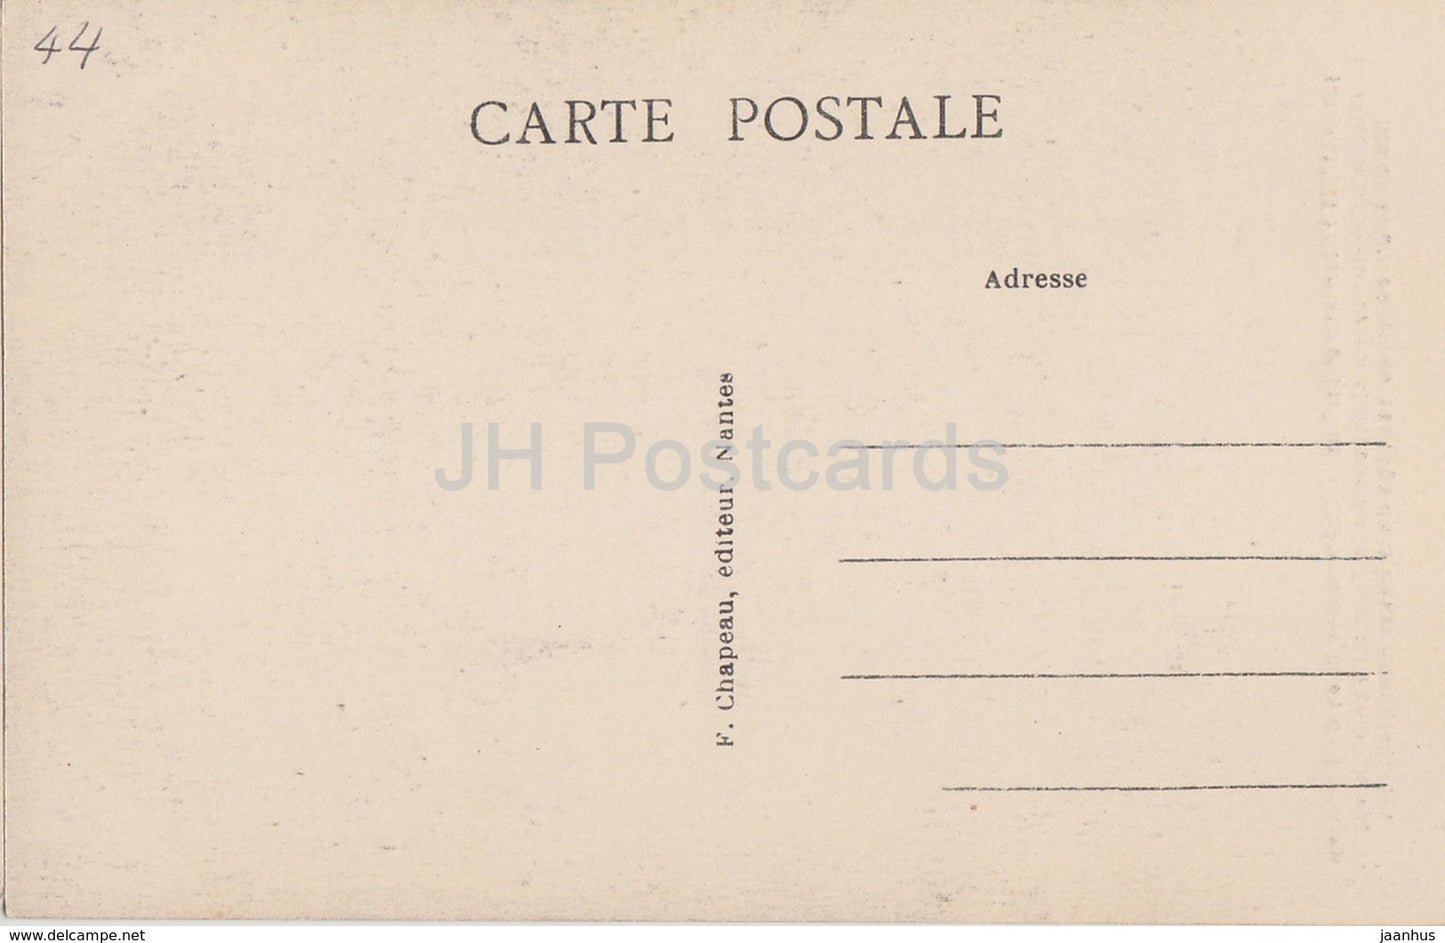 Nantes - Pittoresque et Curieux - Château des Ducs de Bretagne - château - 169 - carte postale ancienne - France - inutilisé